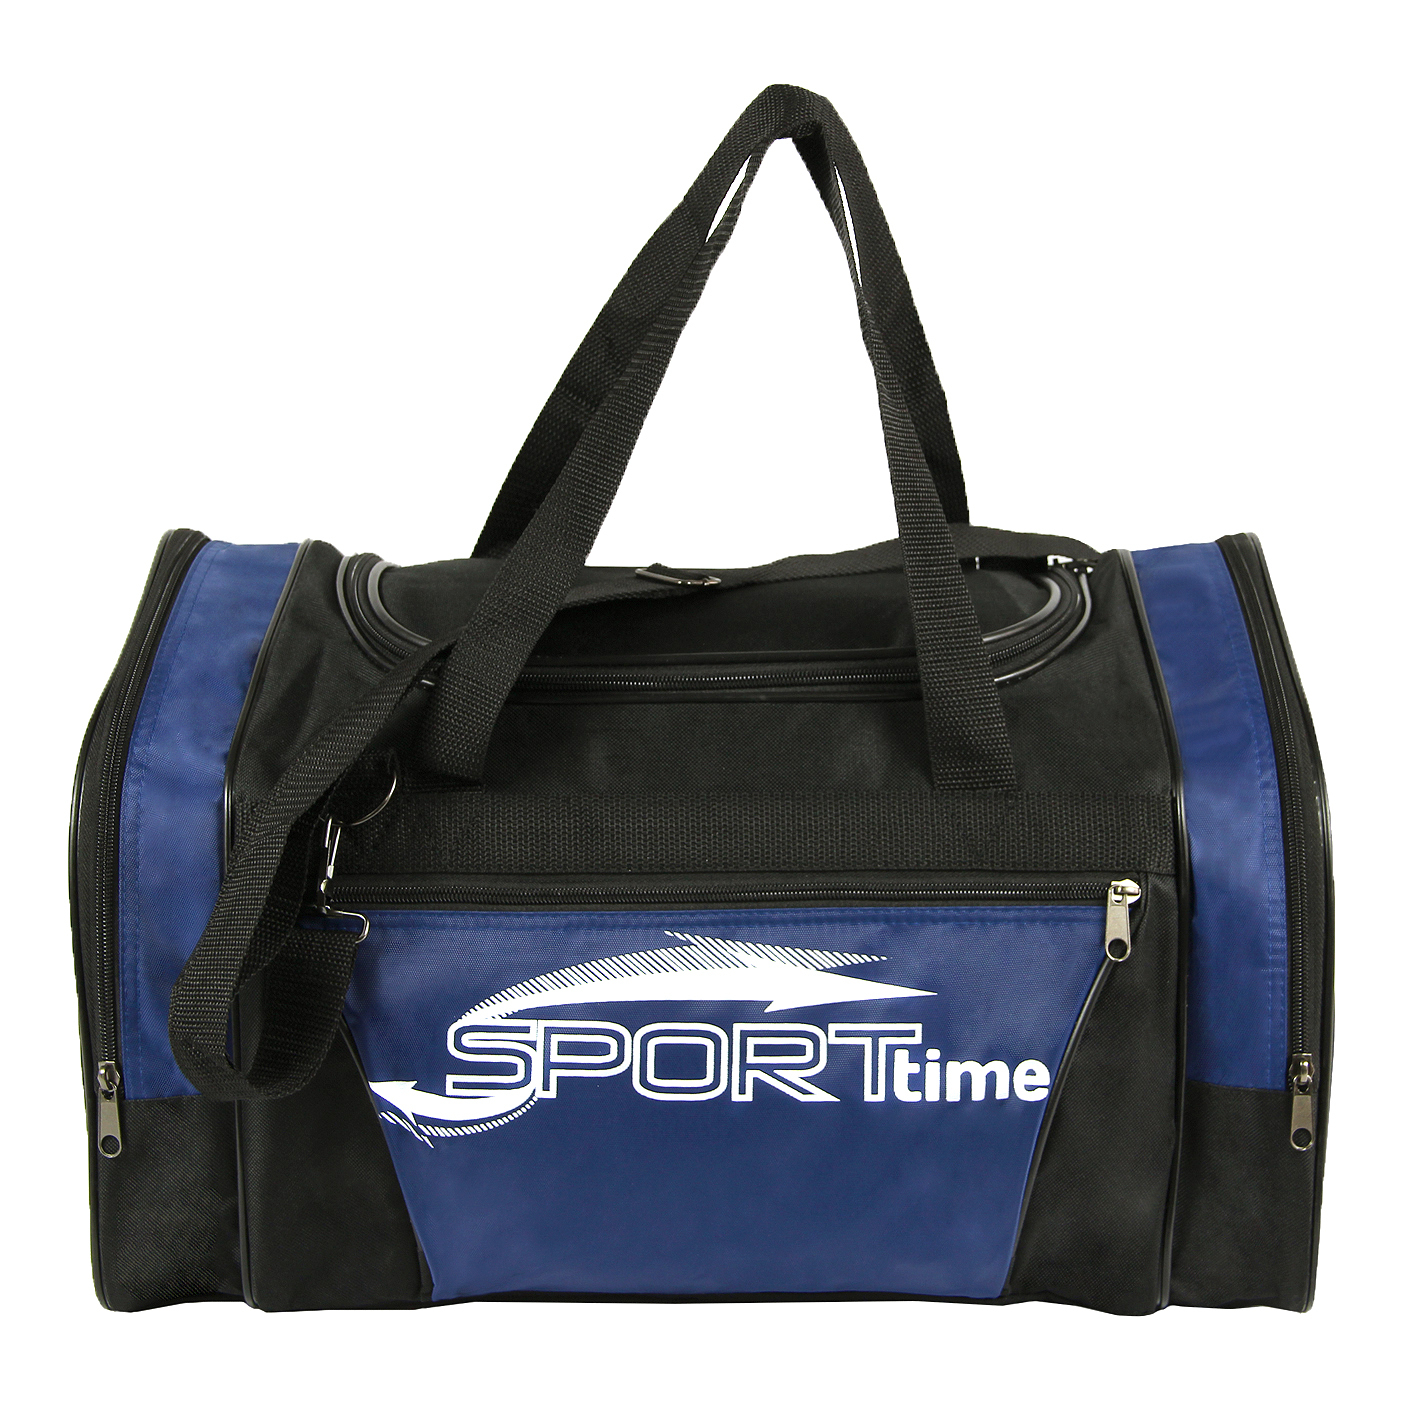 Озон сумка спортивная. Ом93.3 сумка спорт 6, сорт 3 Luris. Спортивная сумка для мальчика. Детская спортивная сумка. Спортивная сумка West.